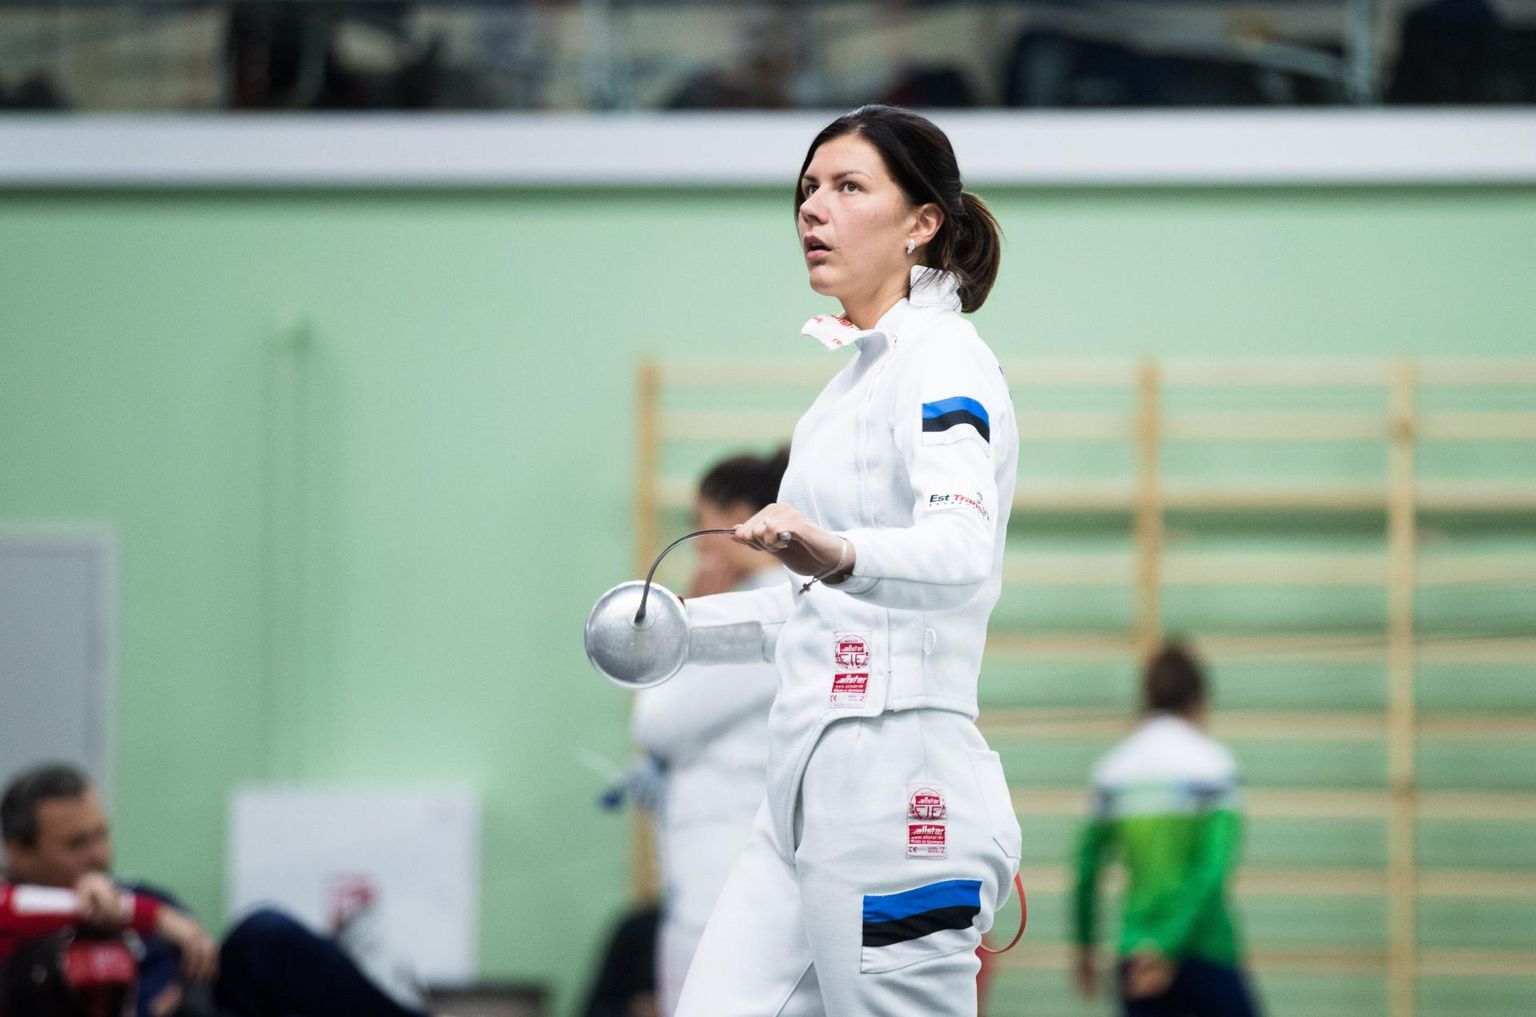 Julia Beljajeva valiti möödunud aastal Tartu parimaks naissportlaseks ning ta kuulub Eesti epeenaiskonda.